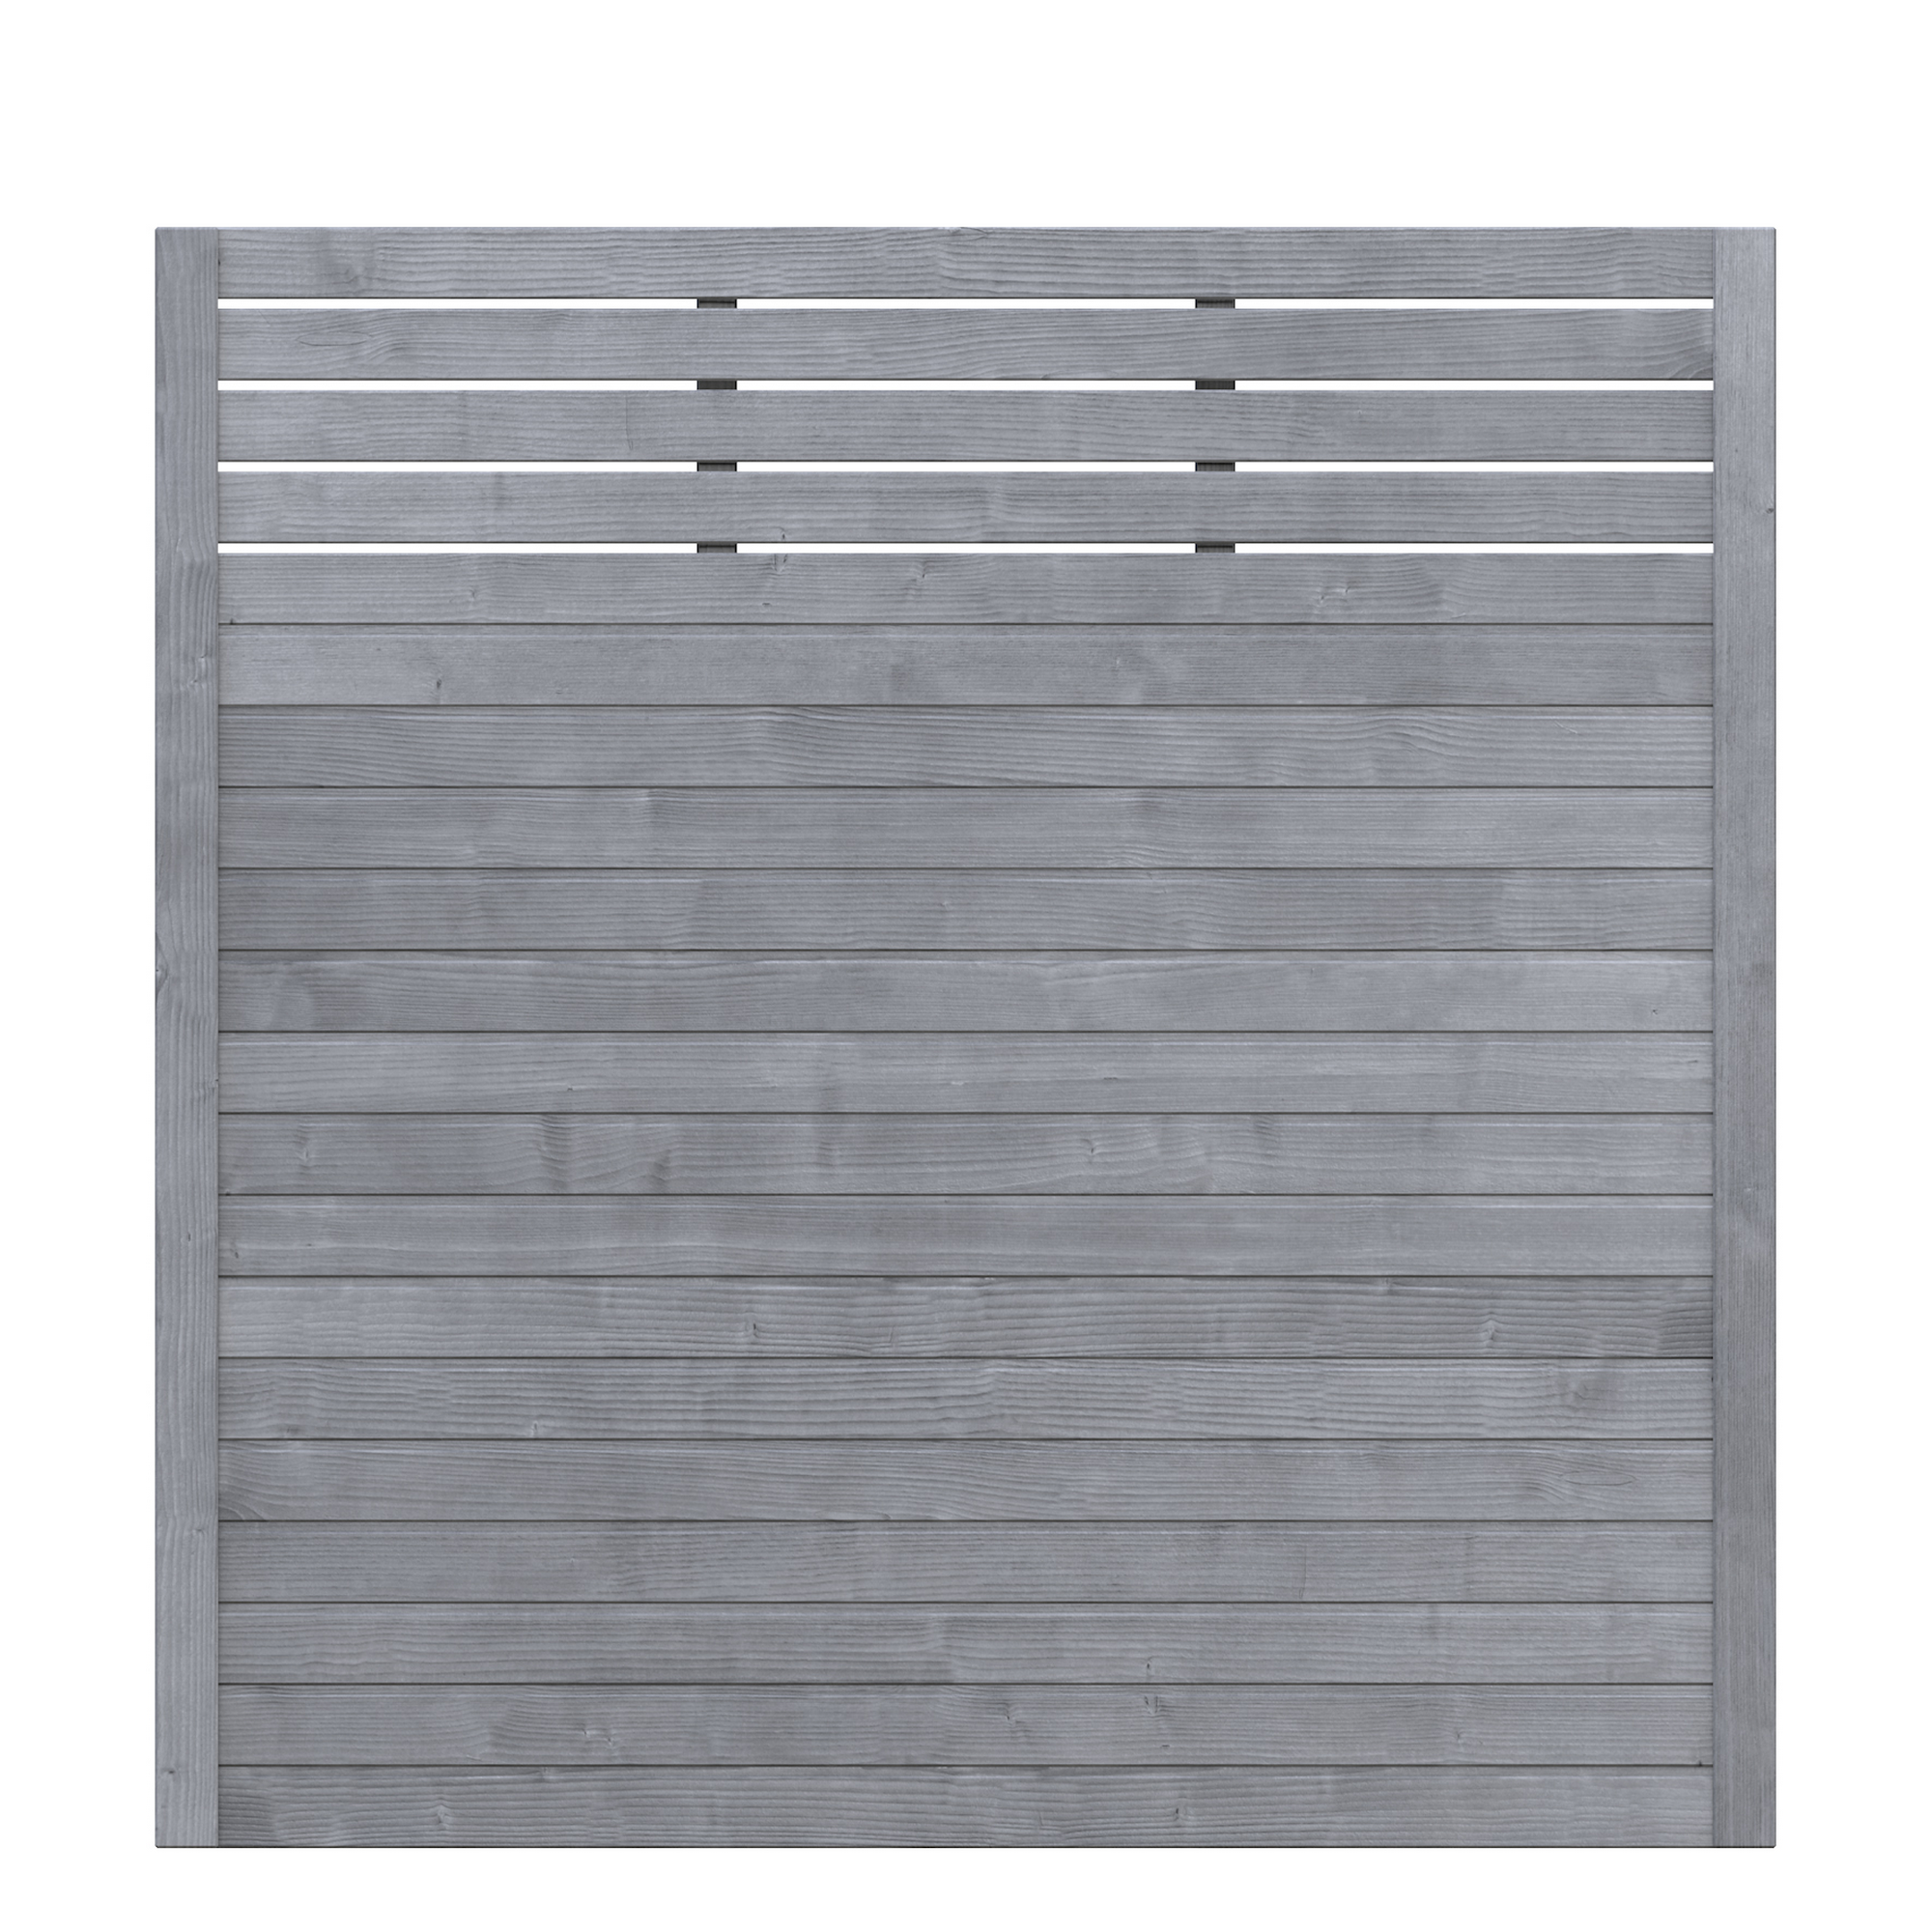 Sichtschutzzaun 'Neo Design' mit Gitter grau 179 x 179 cm + product picture